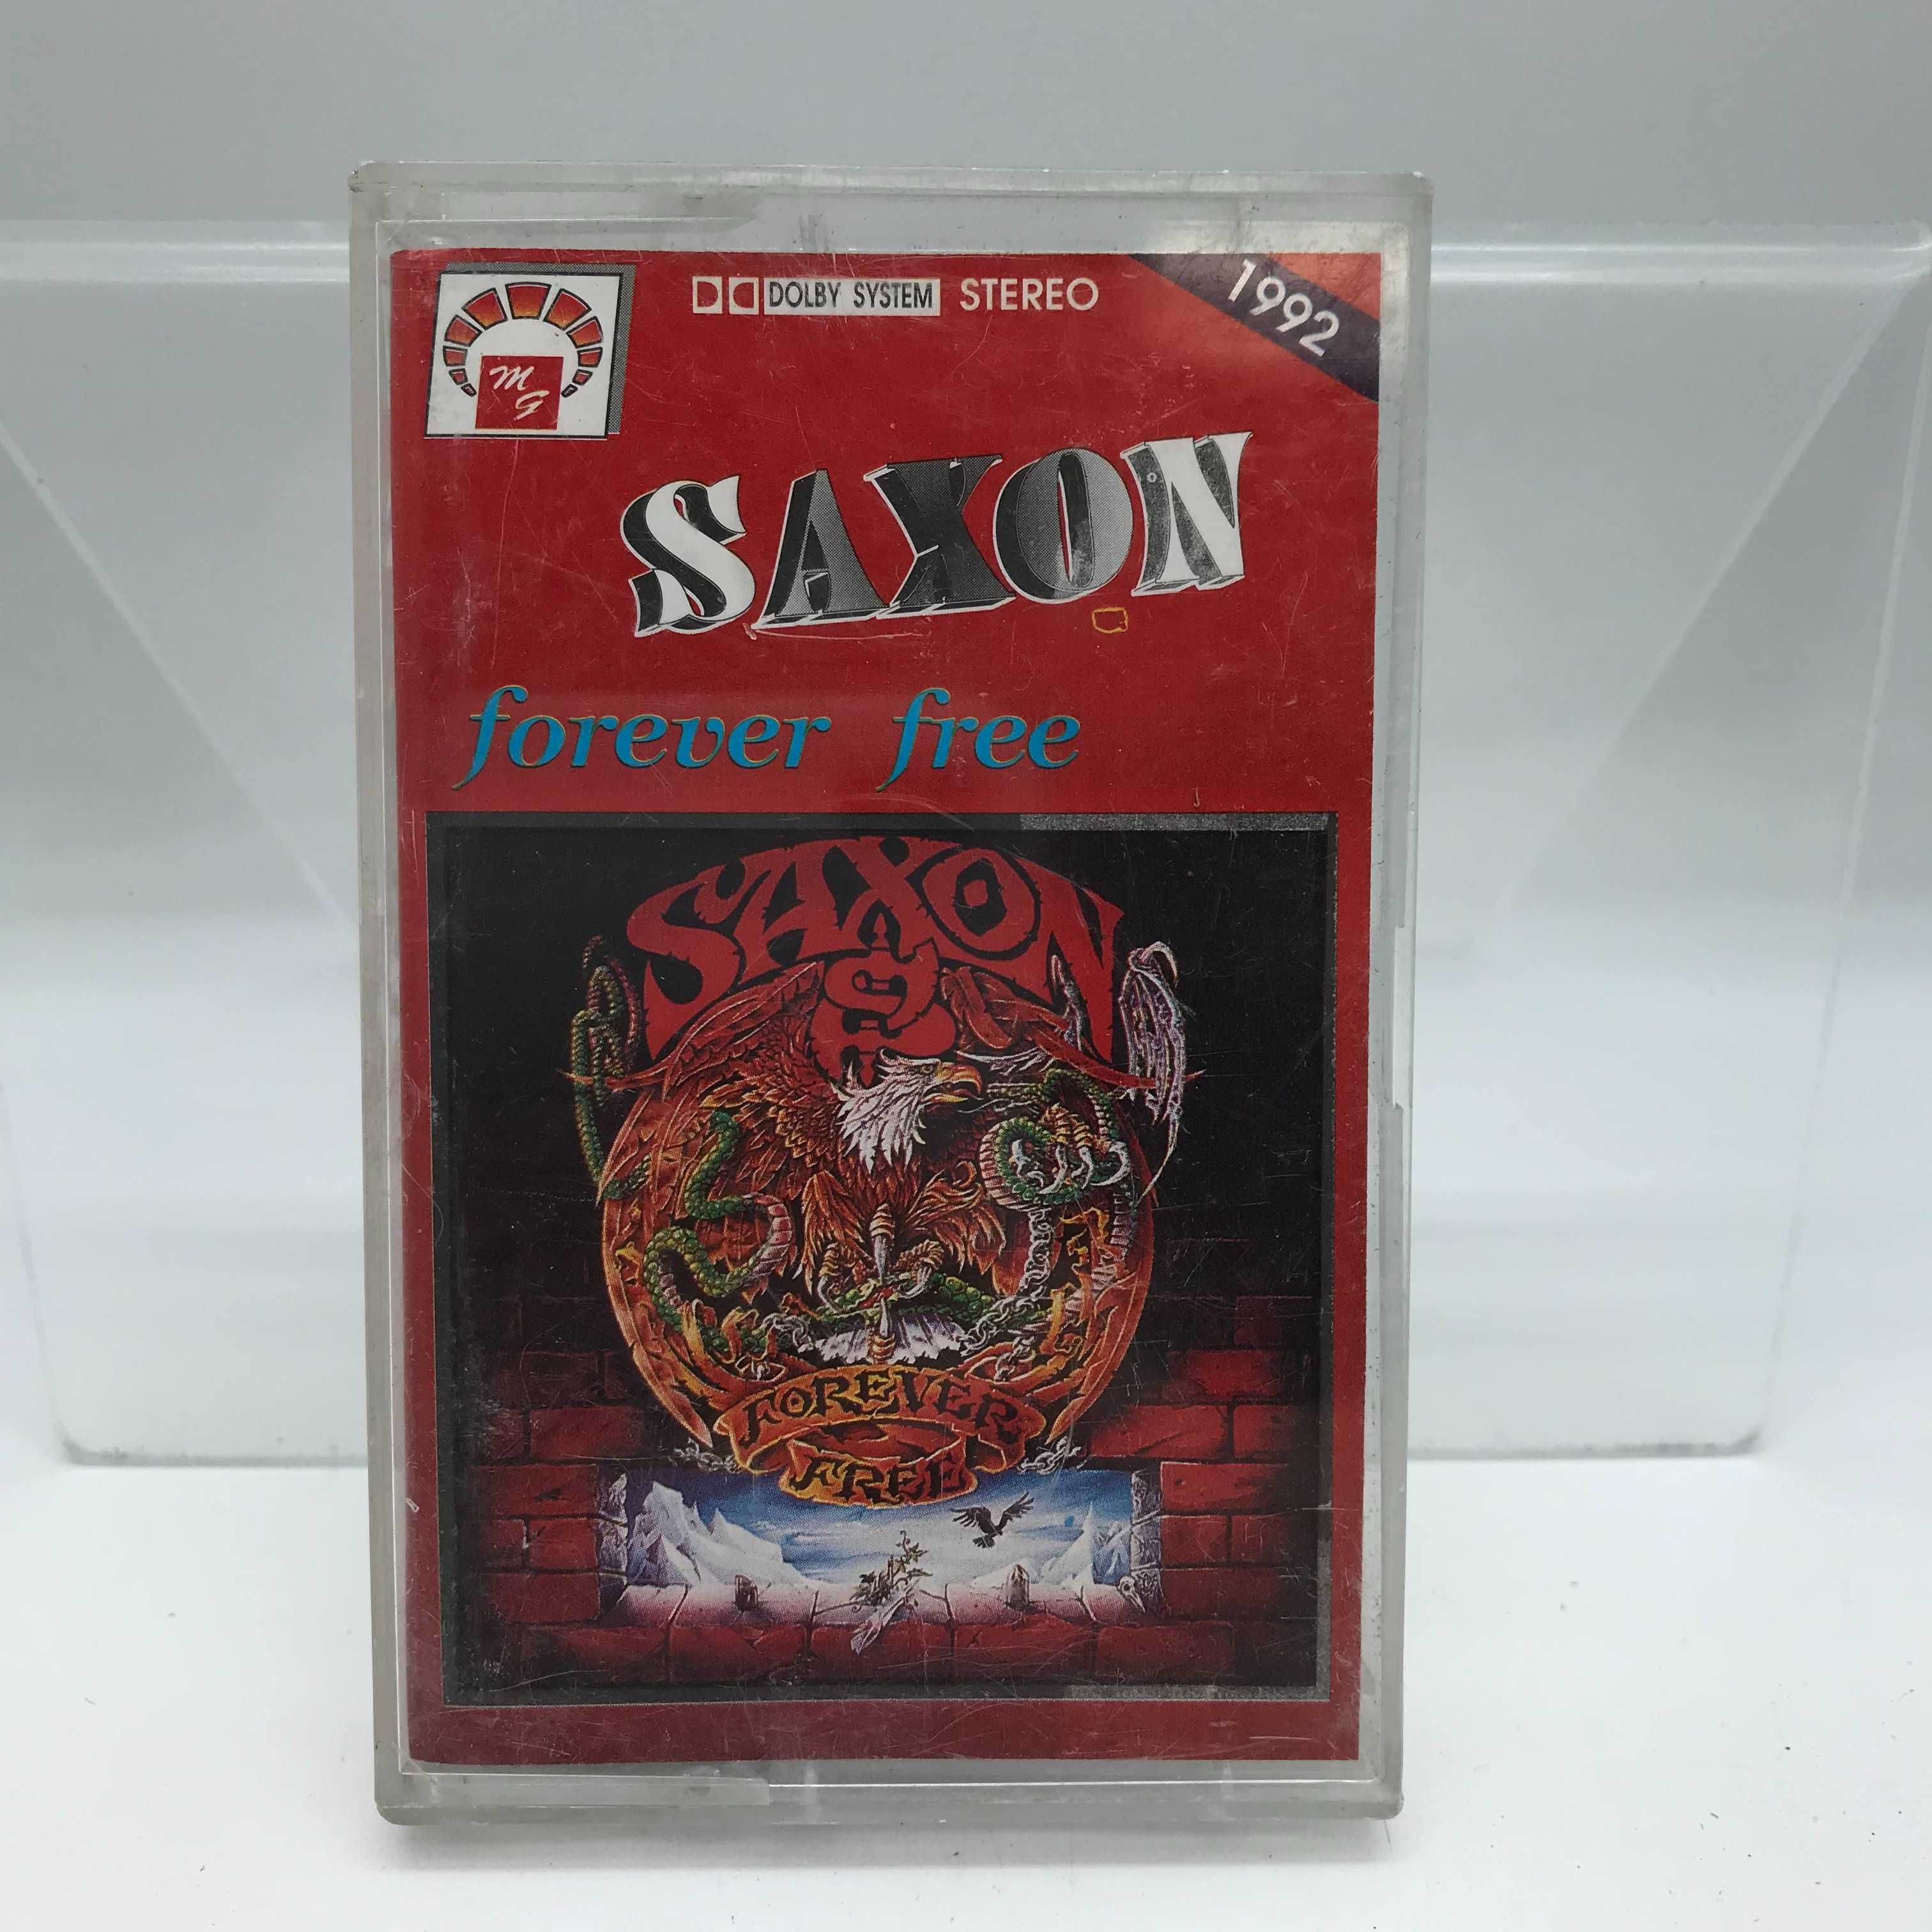 kaseta saxon - forever free (3213)